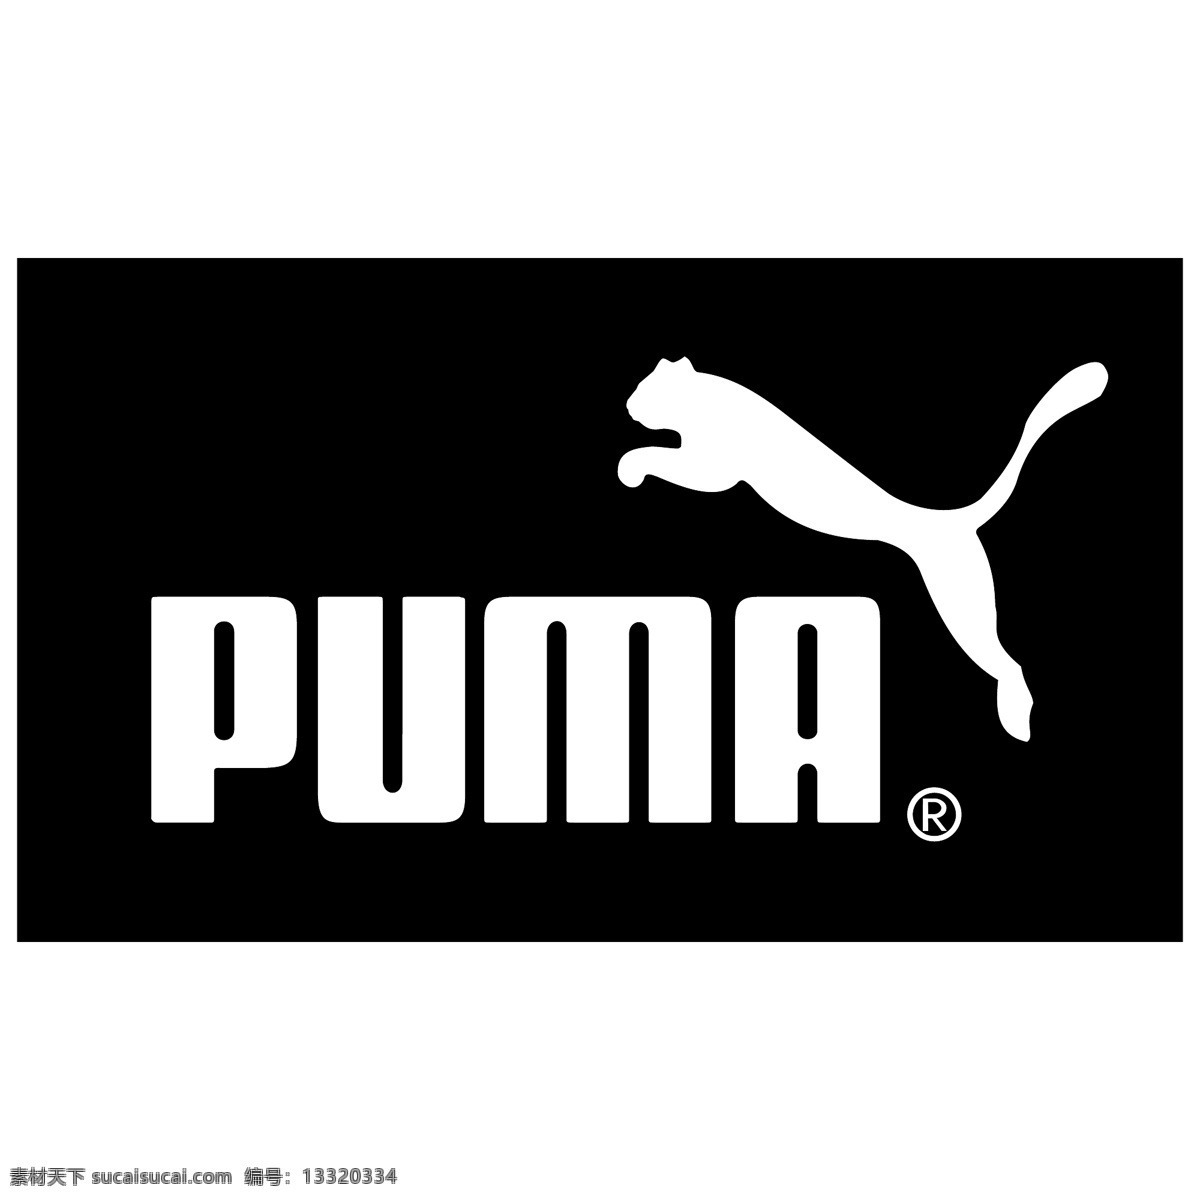 彪 马 puma 企业 标志 运动品牌 彪马 标识标志图标 logo 运动 品牌 矢量图库